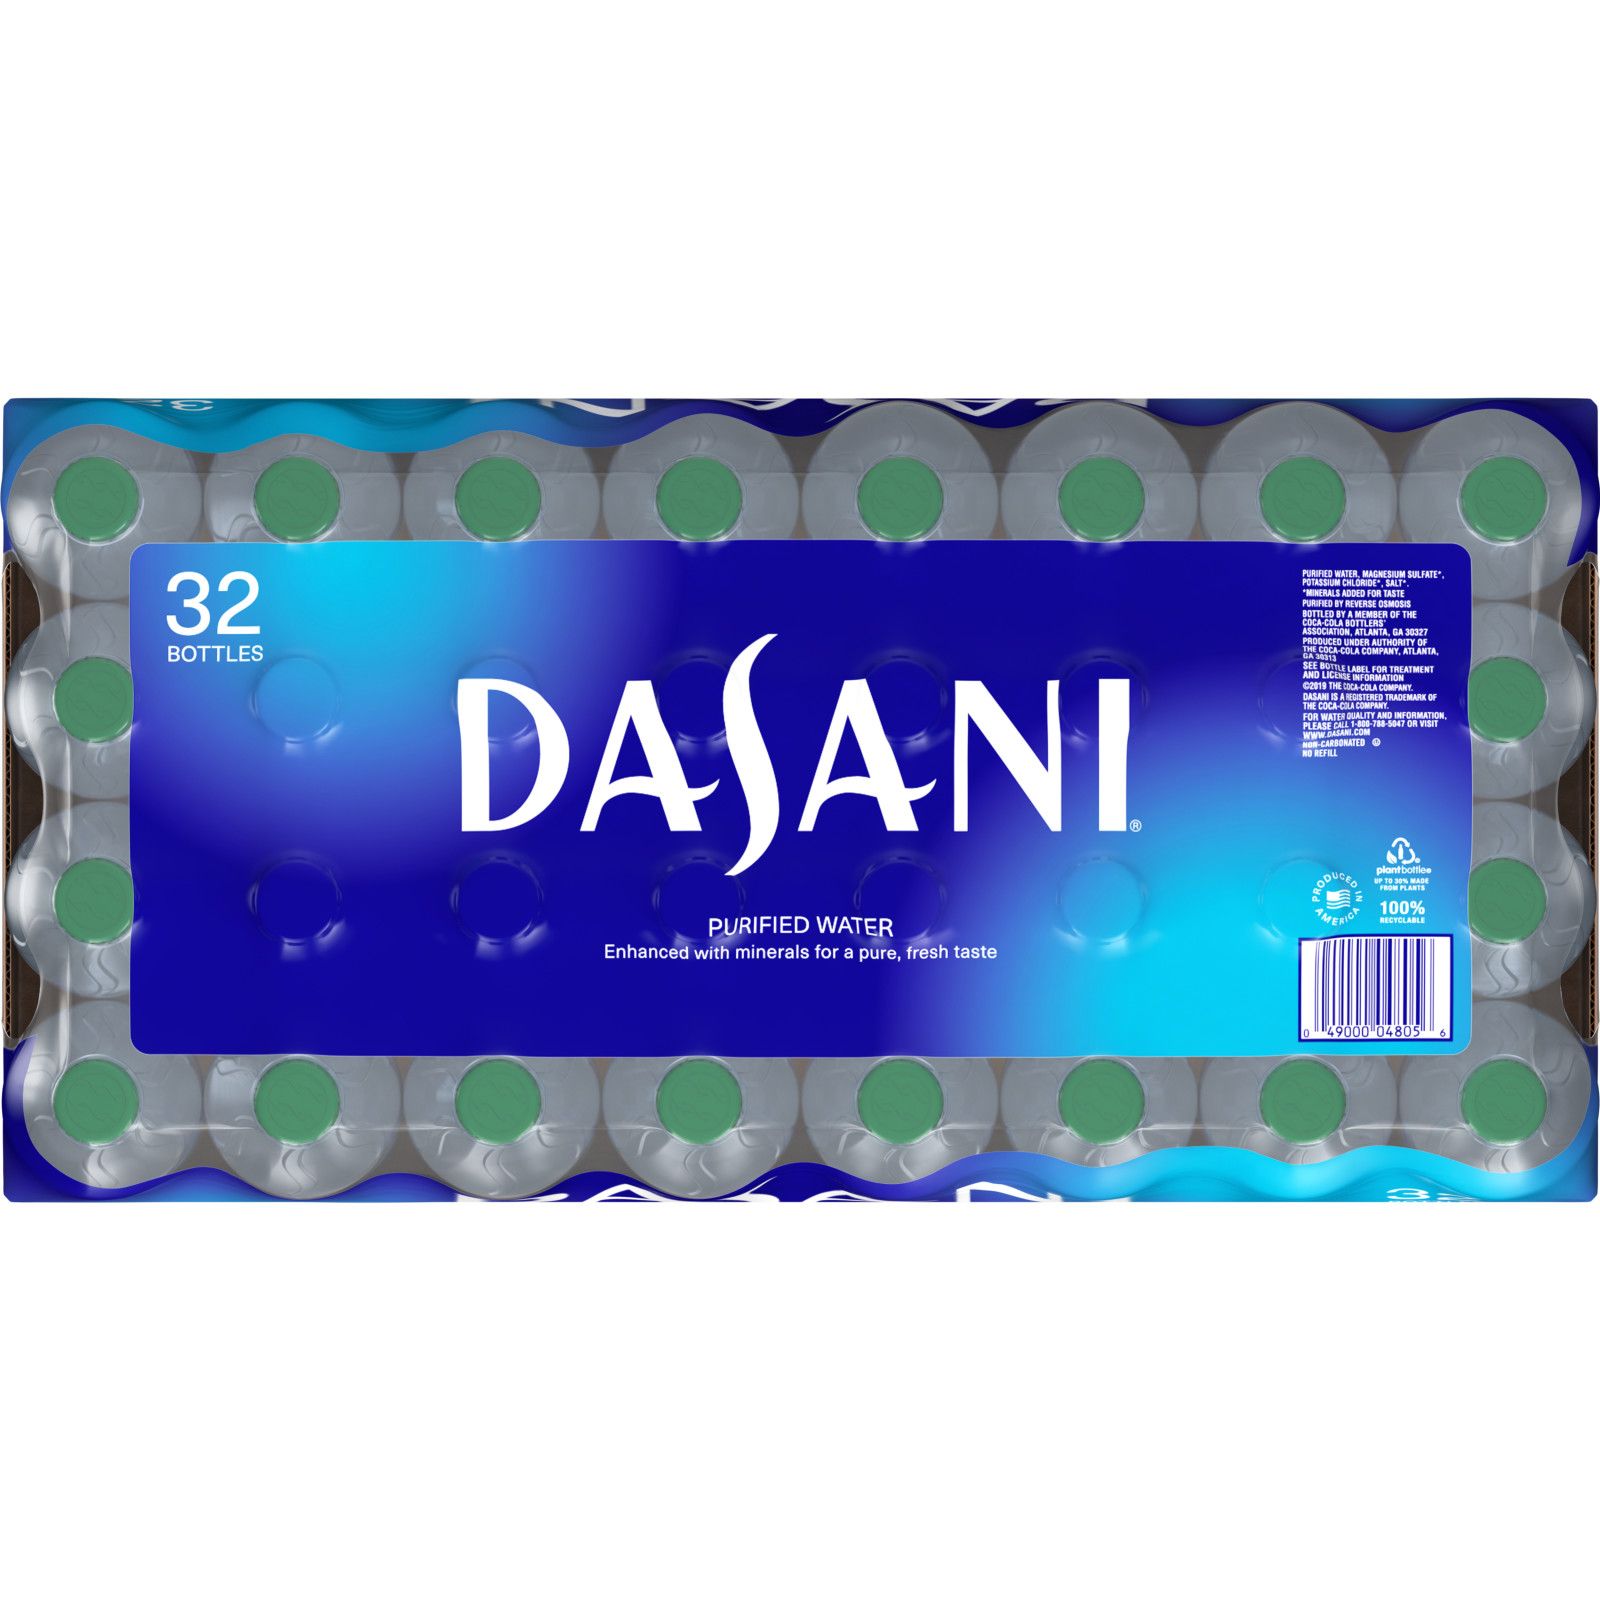 Dasani, 12 Oz. Bottles, 24 Pack